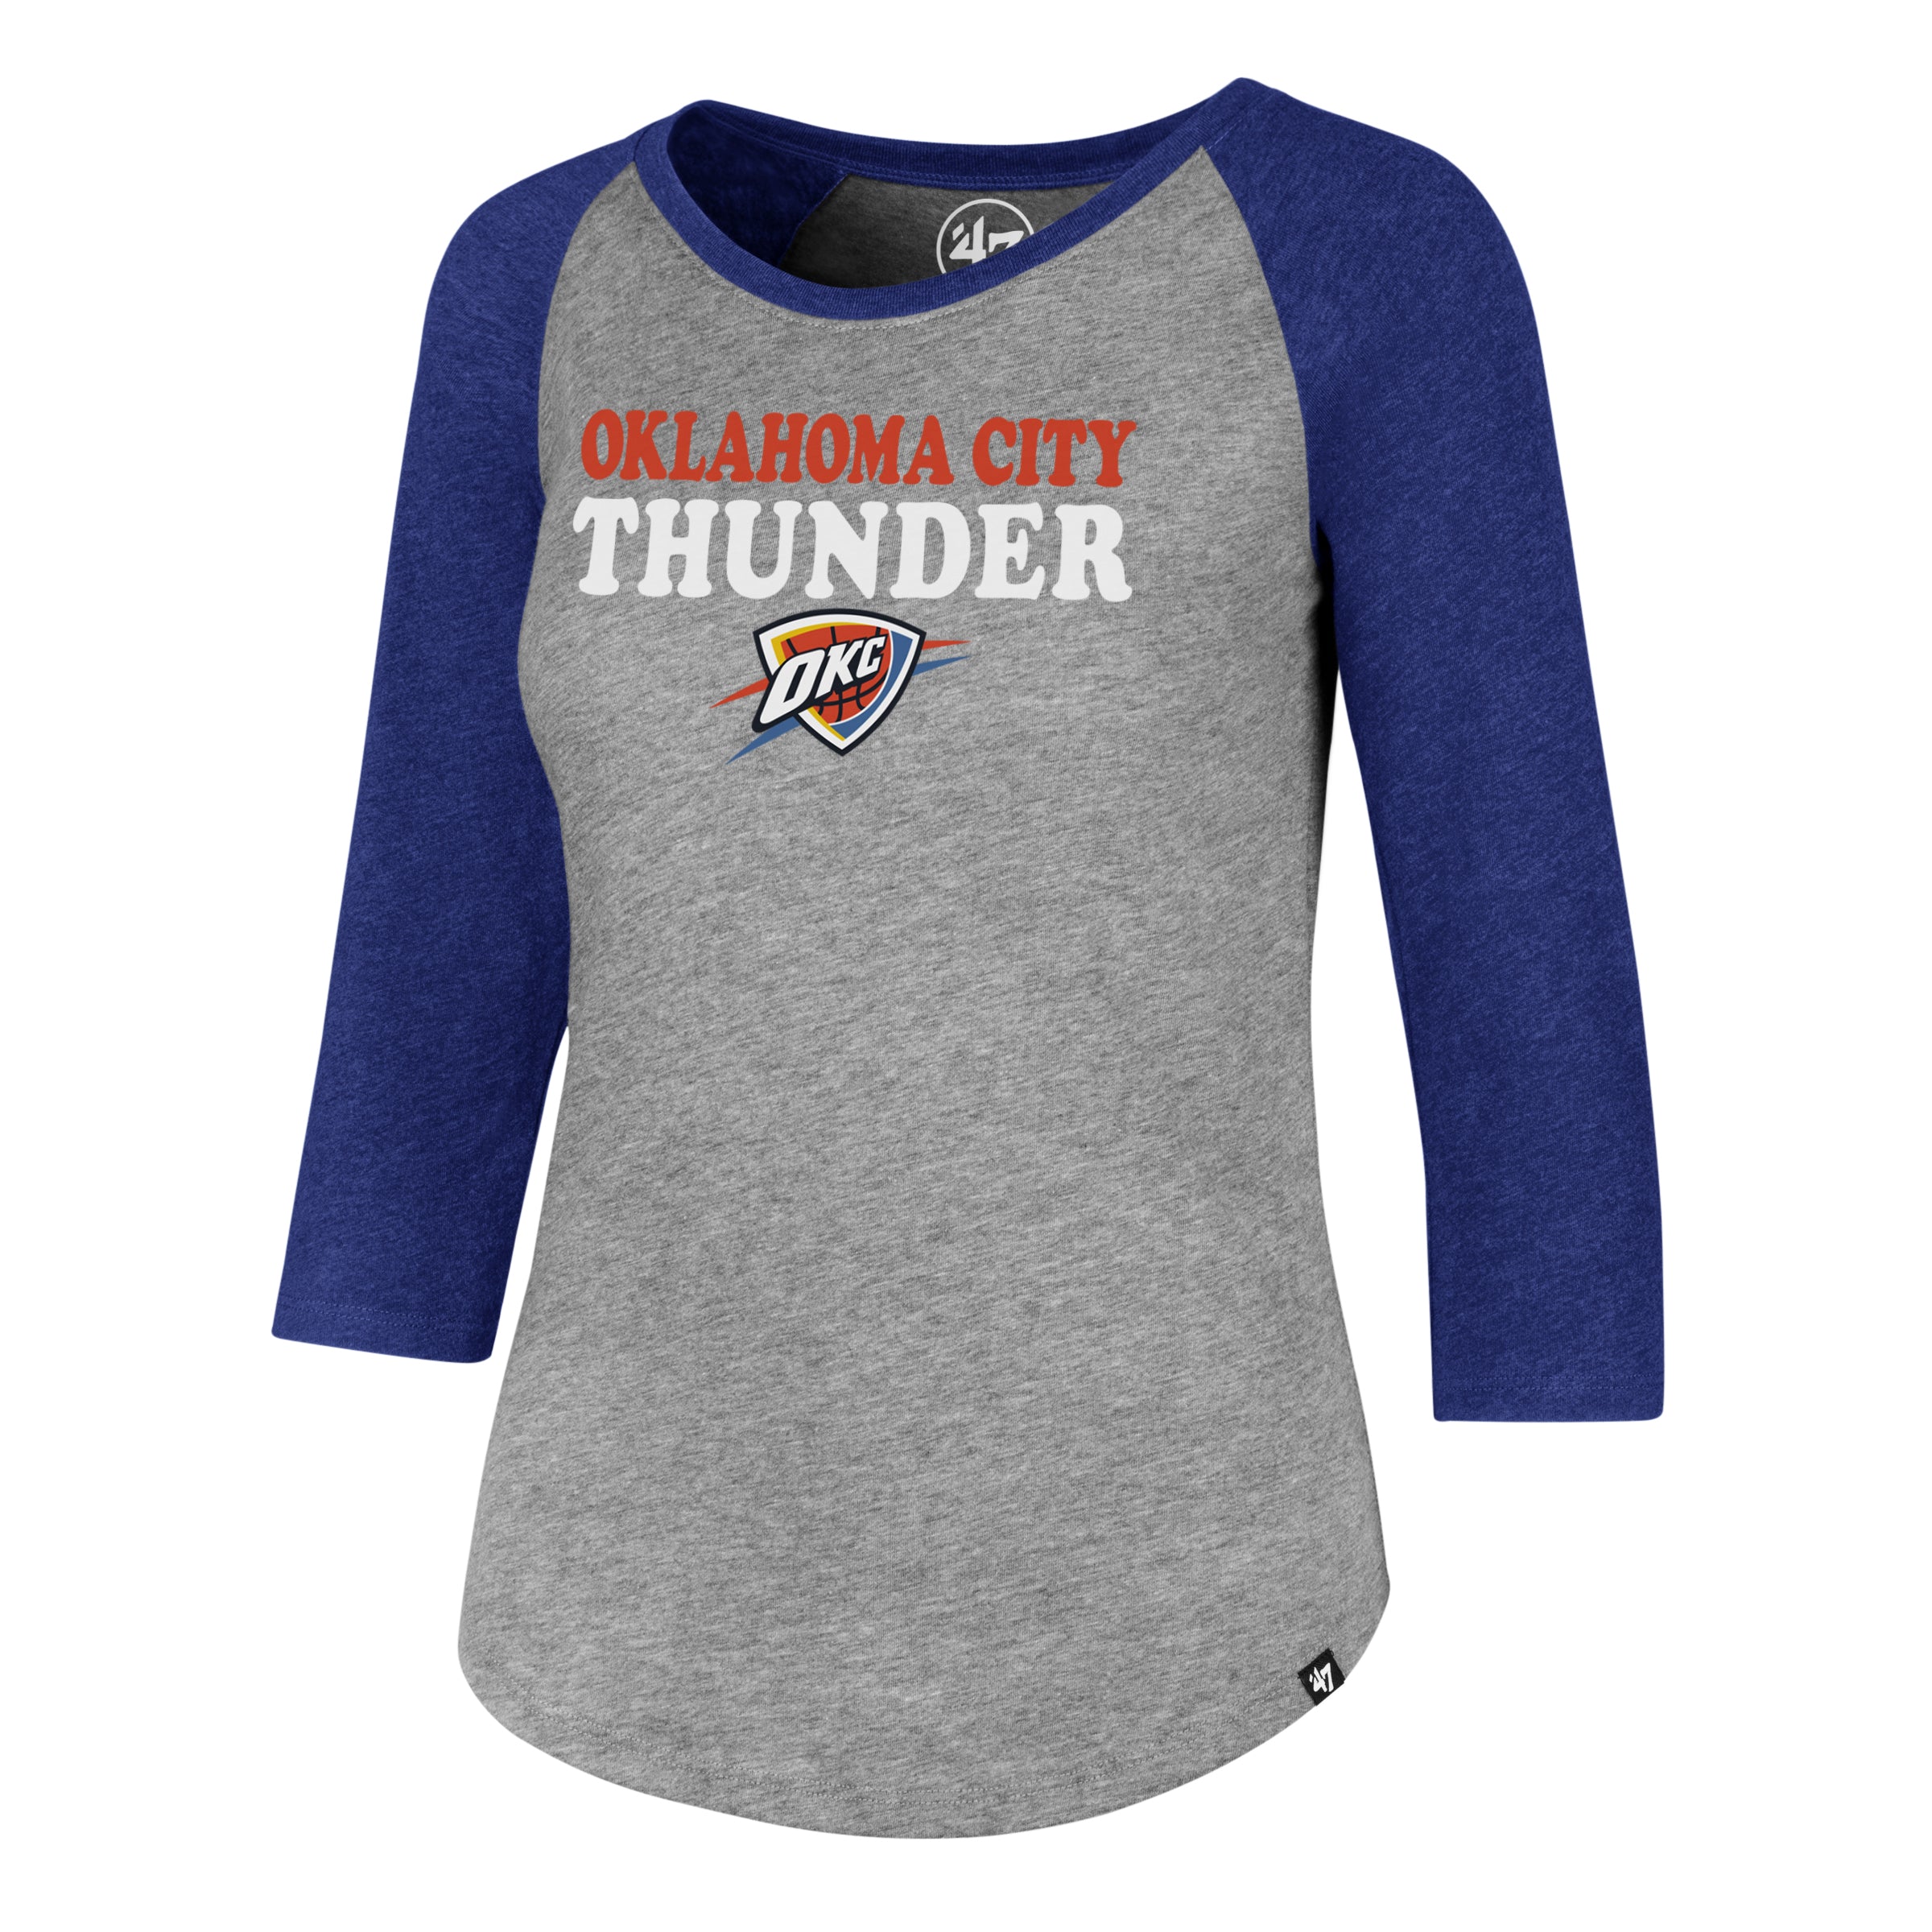 okc thunder women's t shirts